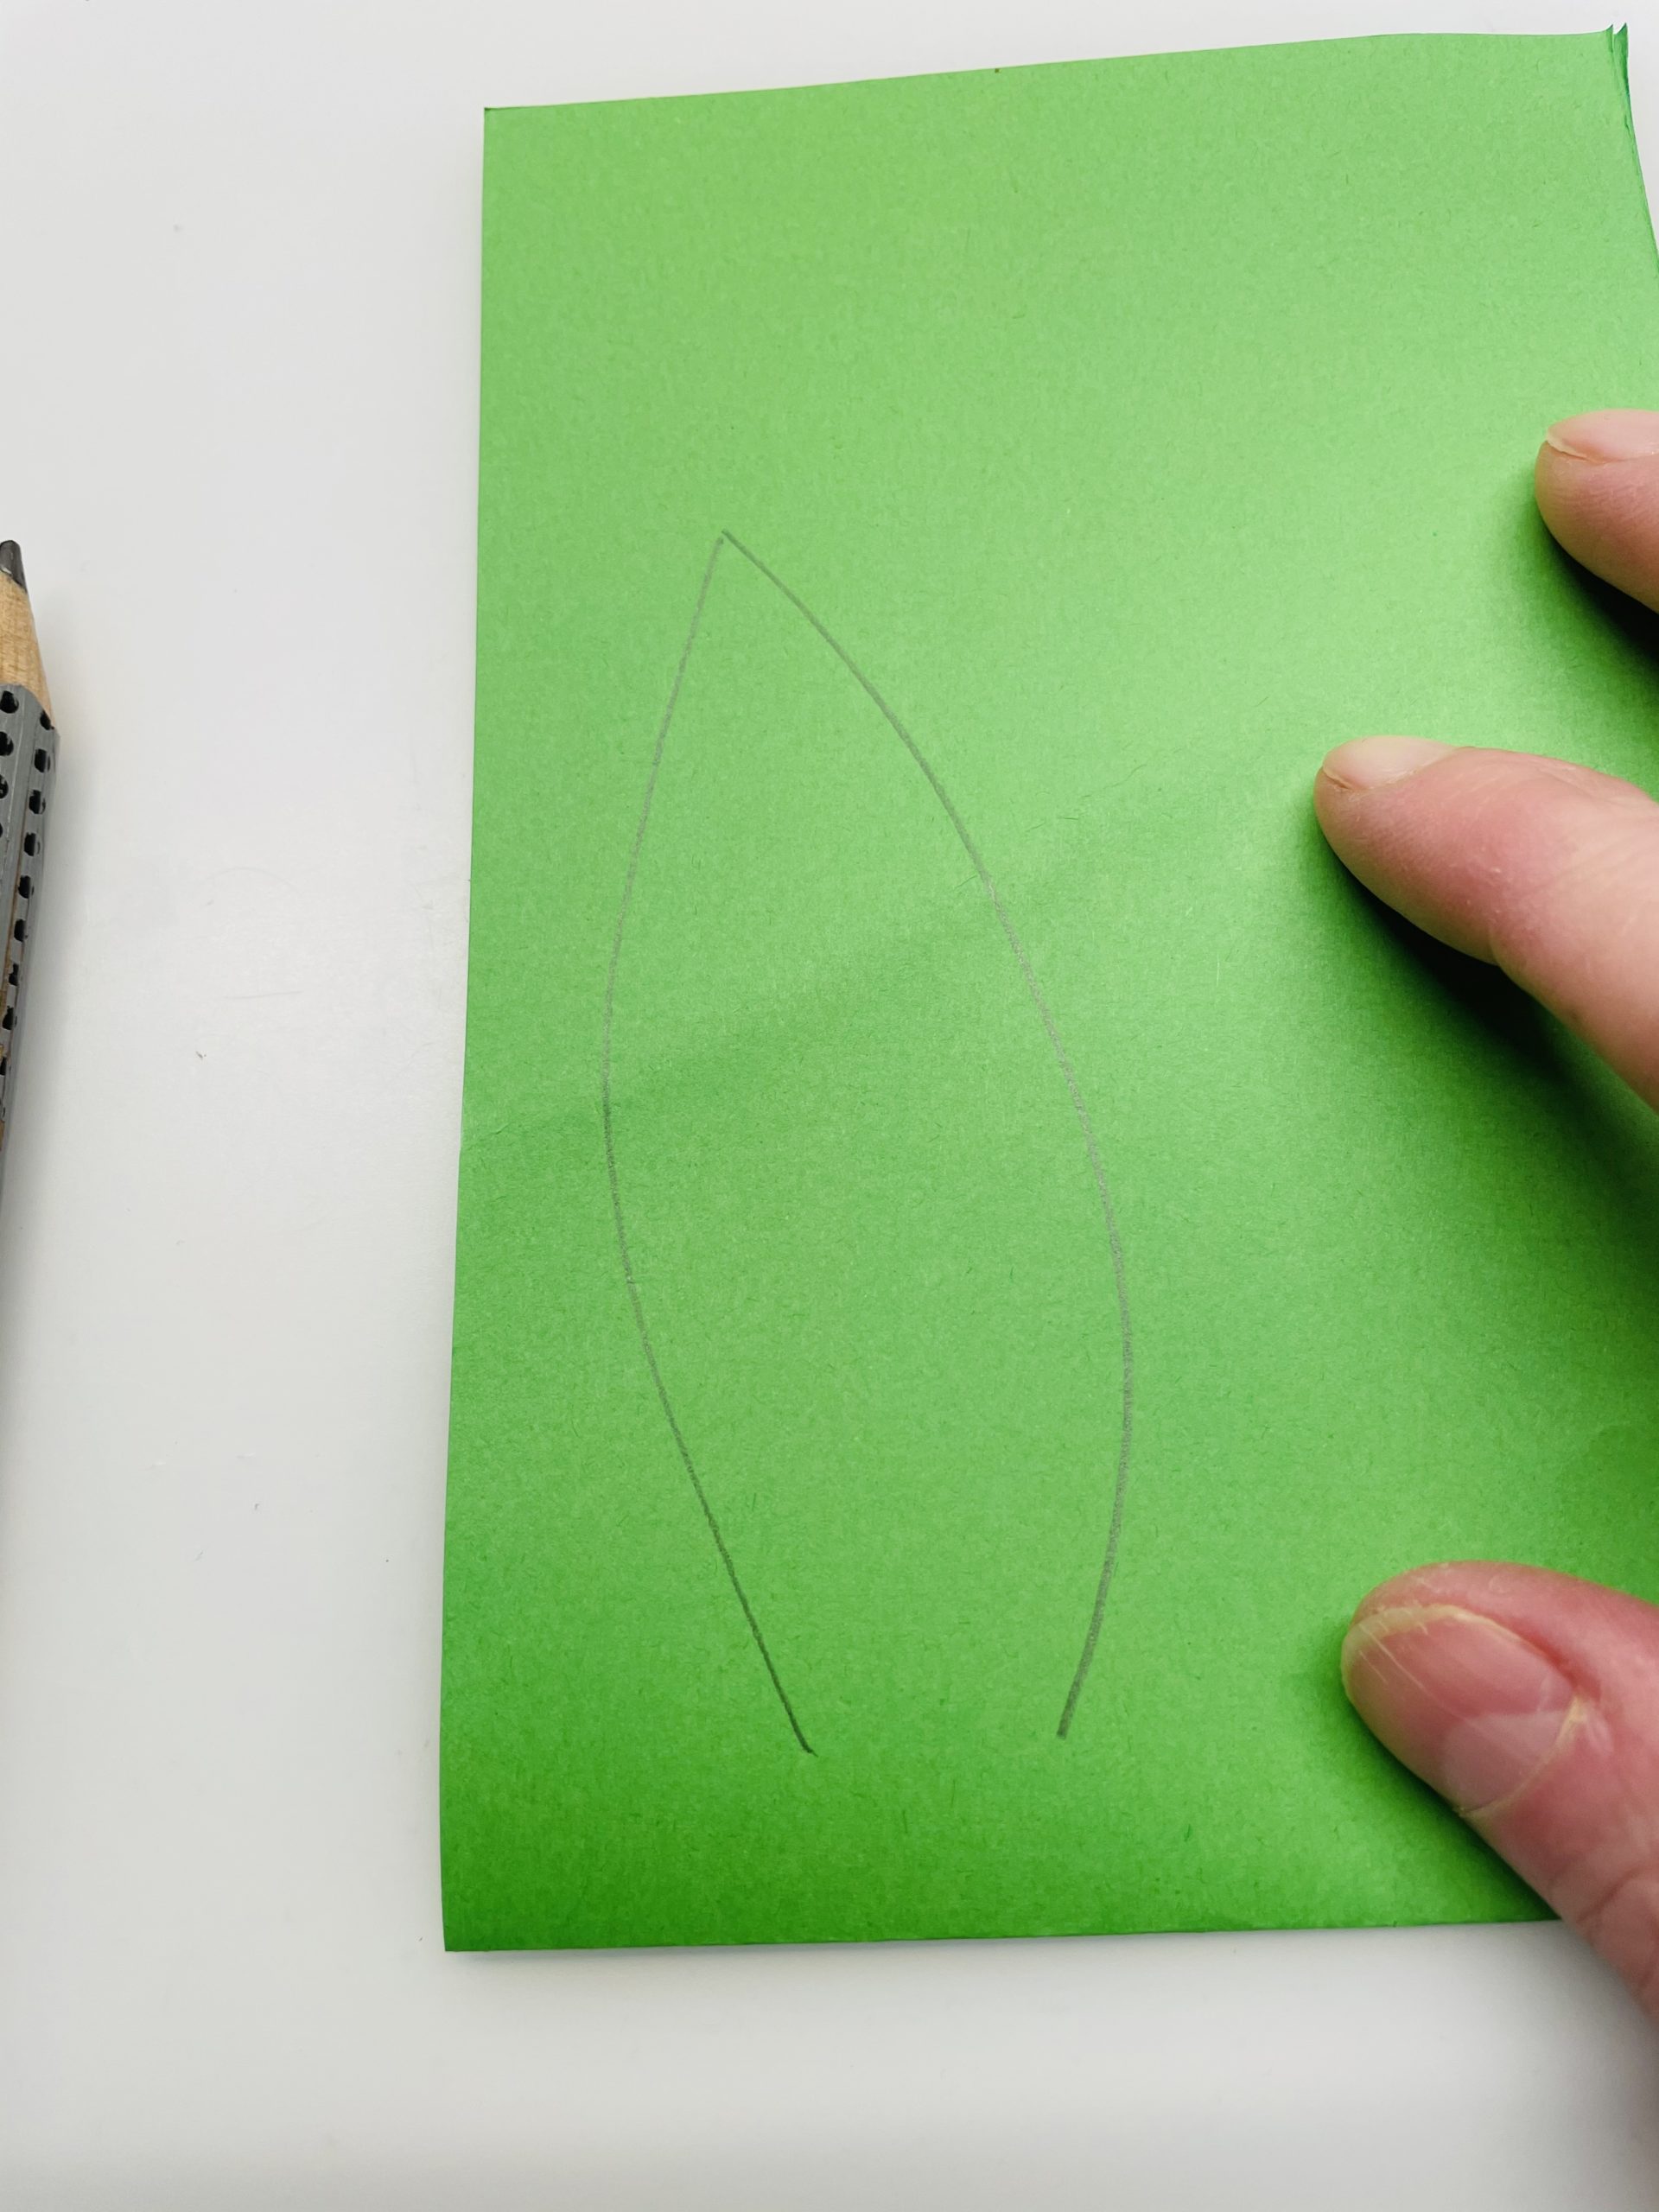 Bild zum Schritt 25 für das Bastel- und DIY-Abenteuer für Kinder: 'Malt euch die Form eines Blattes auf. Der Bruch der...'